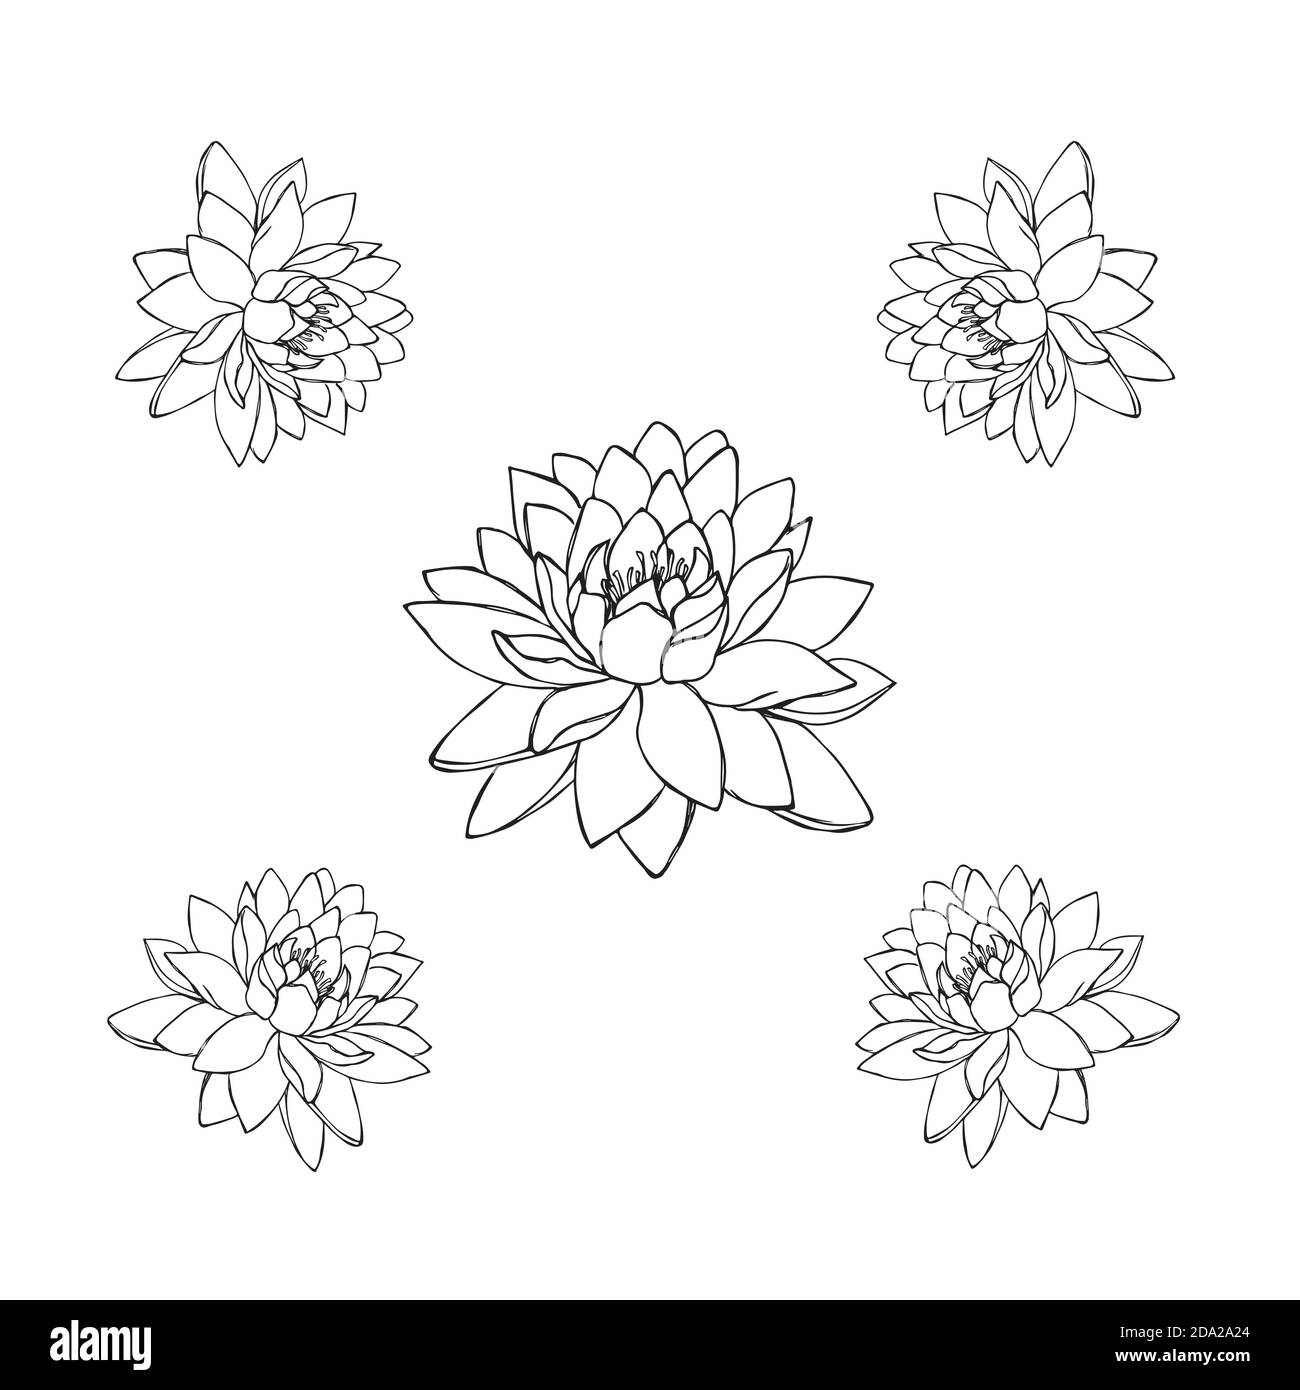 Lotus Flower Tattoo Images  Free Download on Freepik